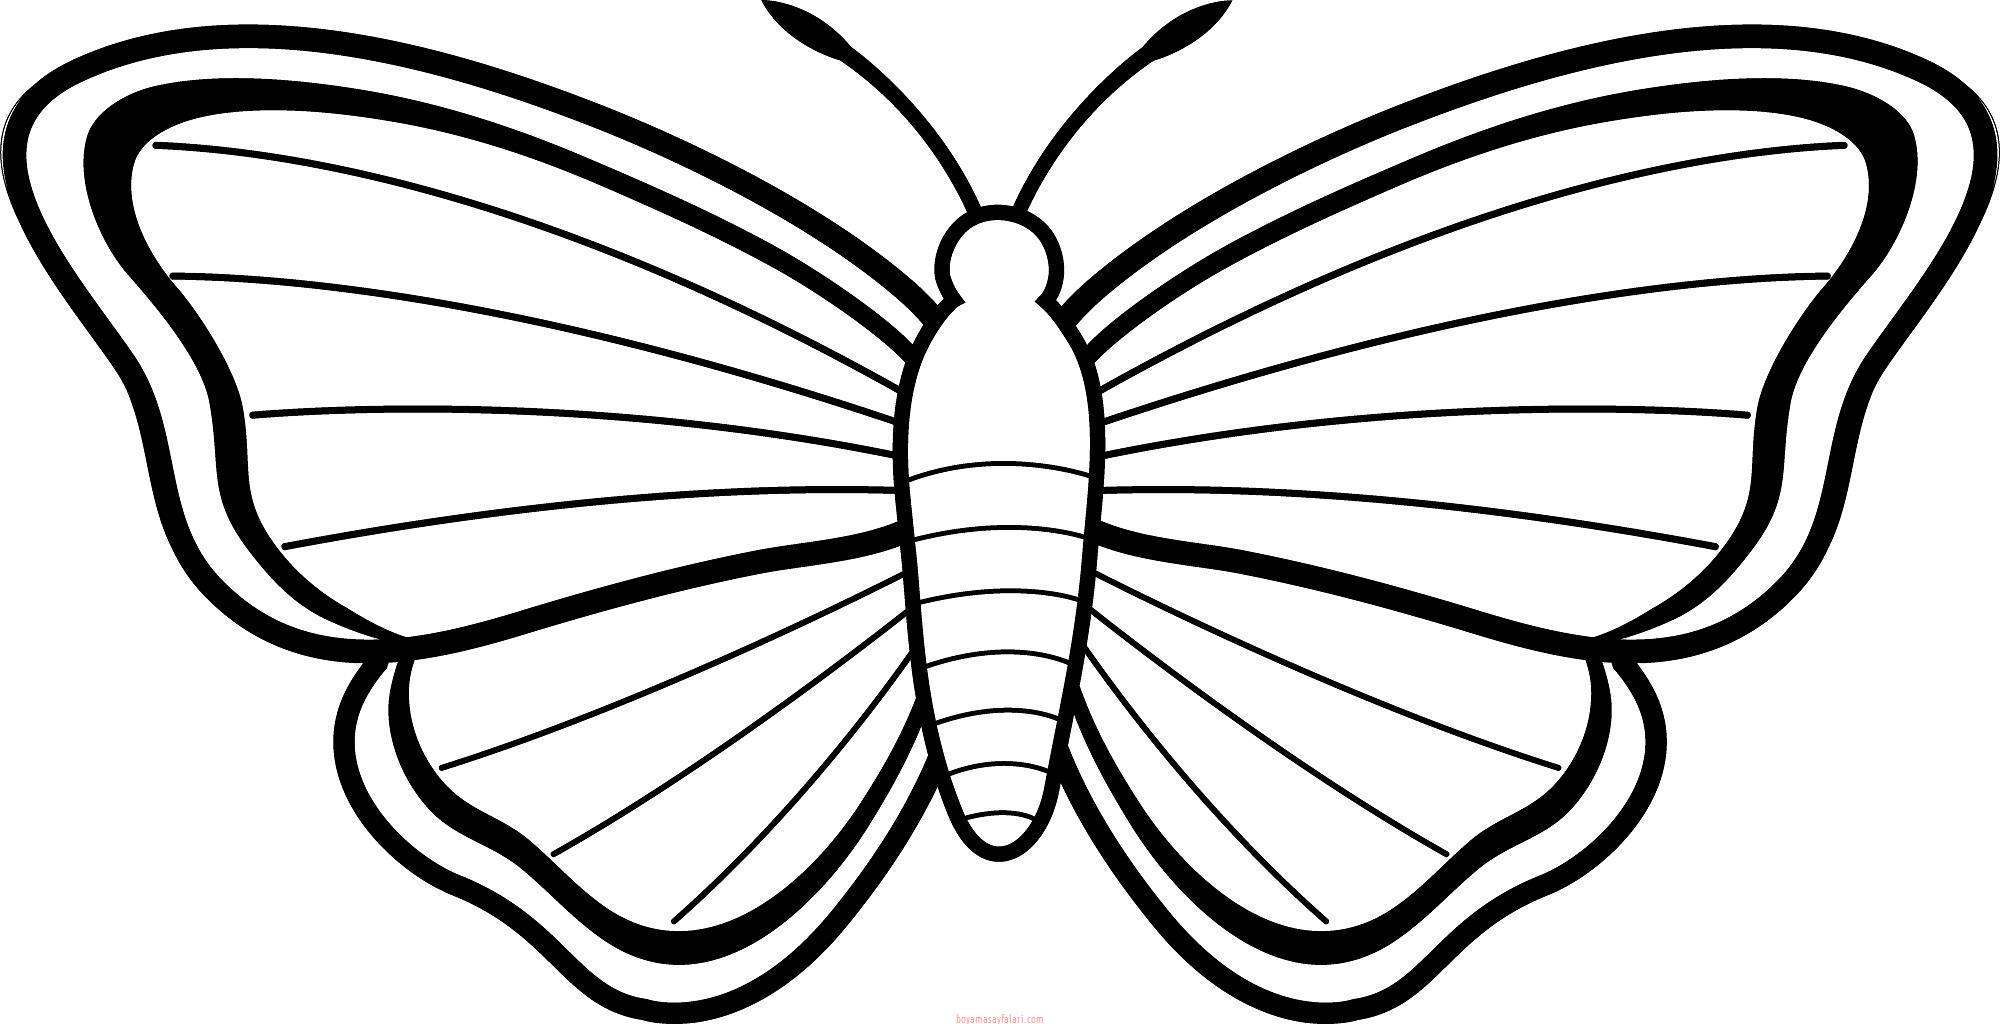 99 Bức tranh tô màu con bướm cực đẹp và đơn giản  Đề án 2020  Tổng hợp  chia sẻ hình ảnh tranh vẽ biểu mẫu trong lĩnh vực giáo dục